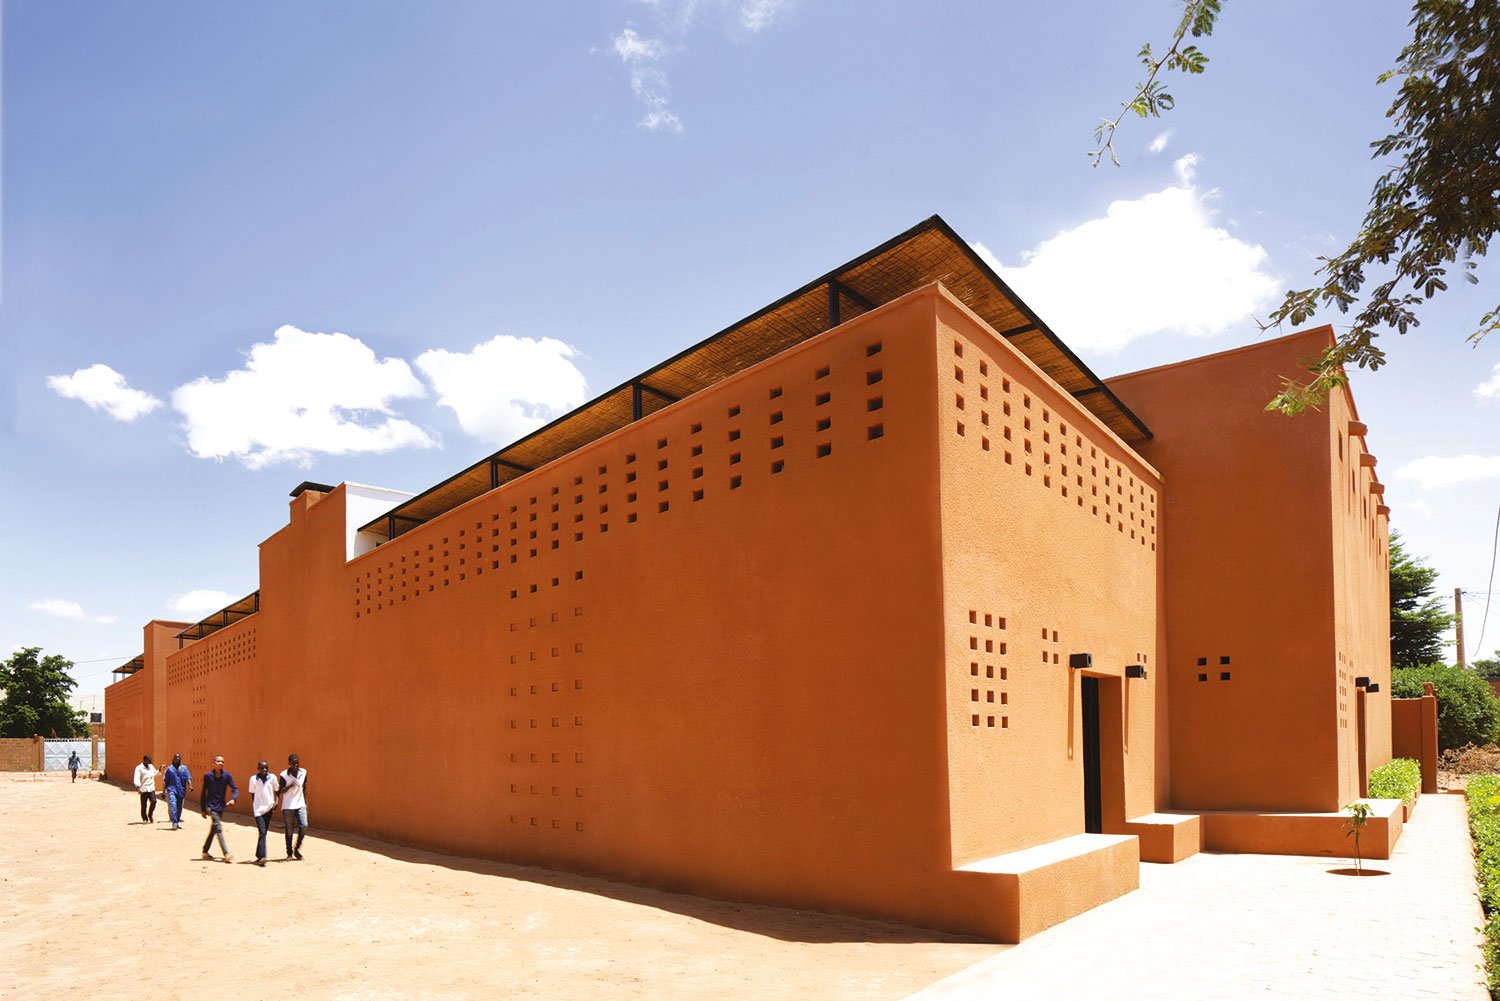 Moderne Häuser: Niamey 2000 ist ein Wohnkomplex für die Mittelschicht von Niger, Lehm sorgt bei 45 Grad für eine angenehme Kühlung. ateliermasomi.com